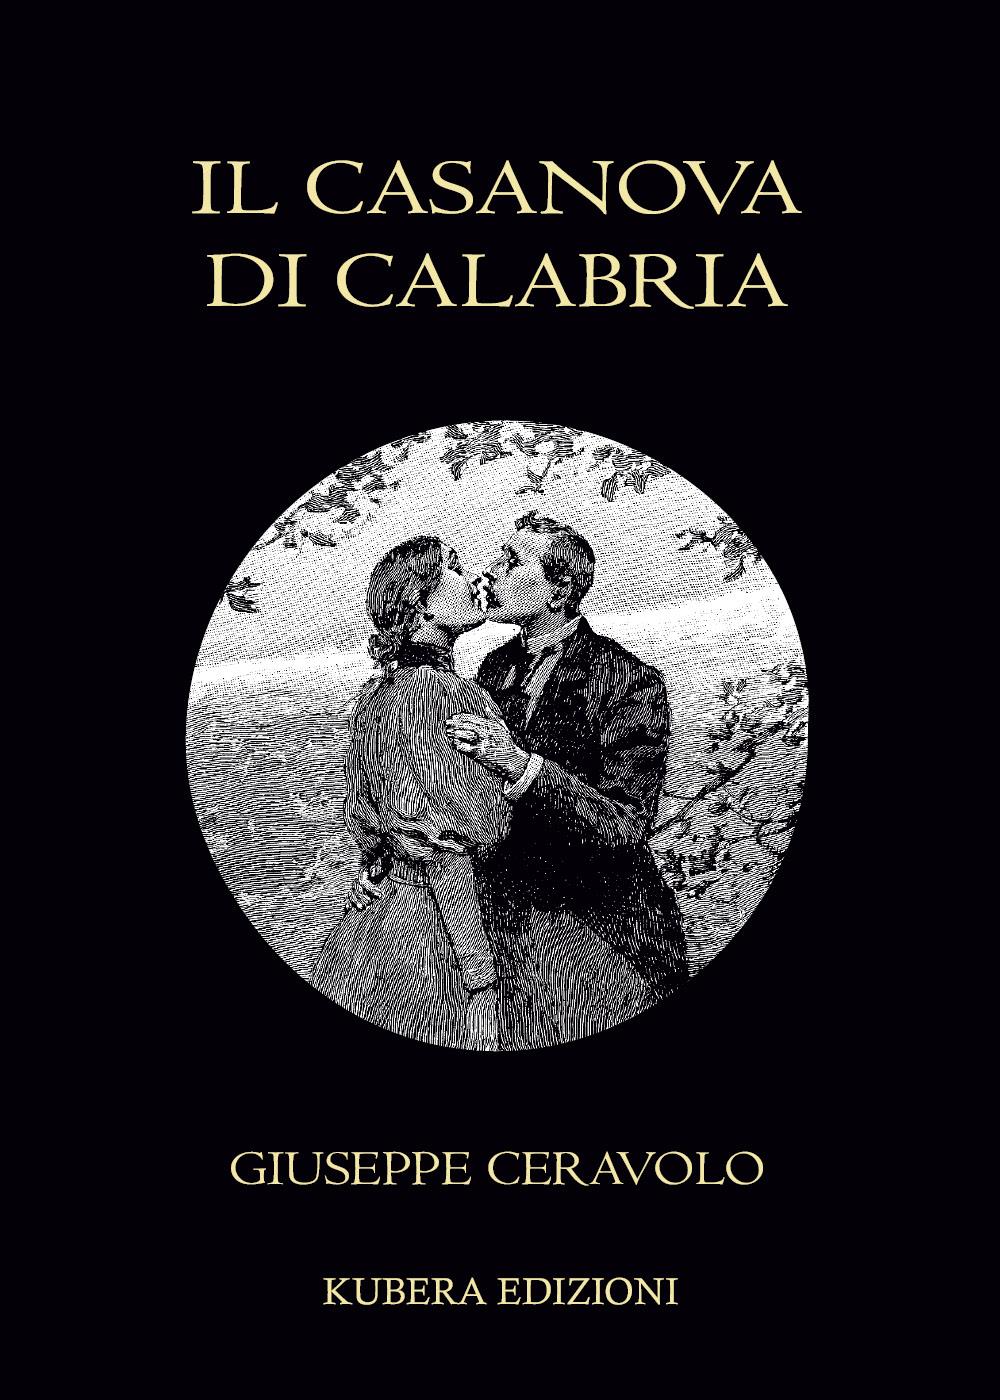 Il Casanova di Calabria